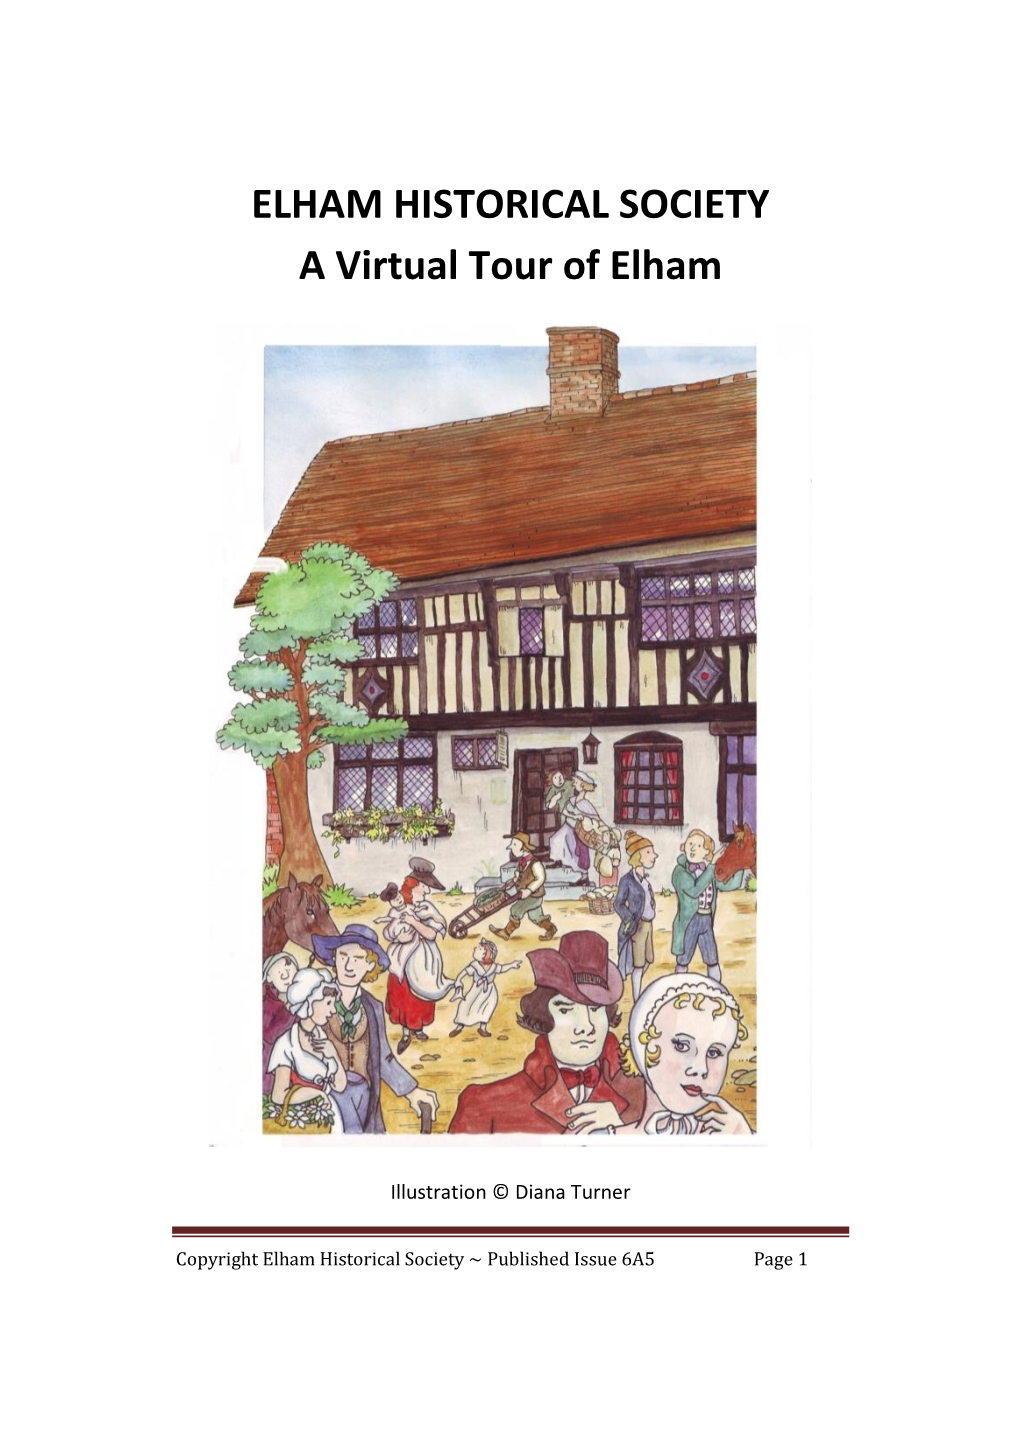 Virtual Tour of Elham